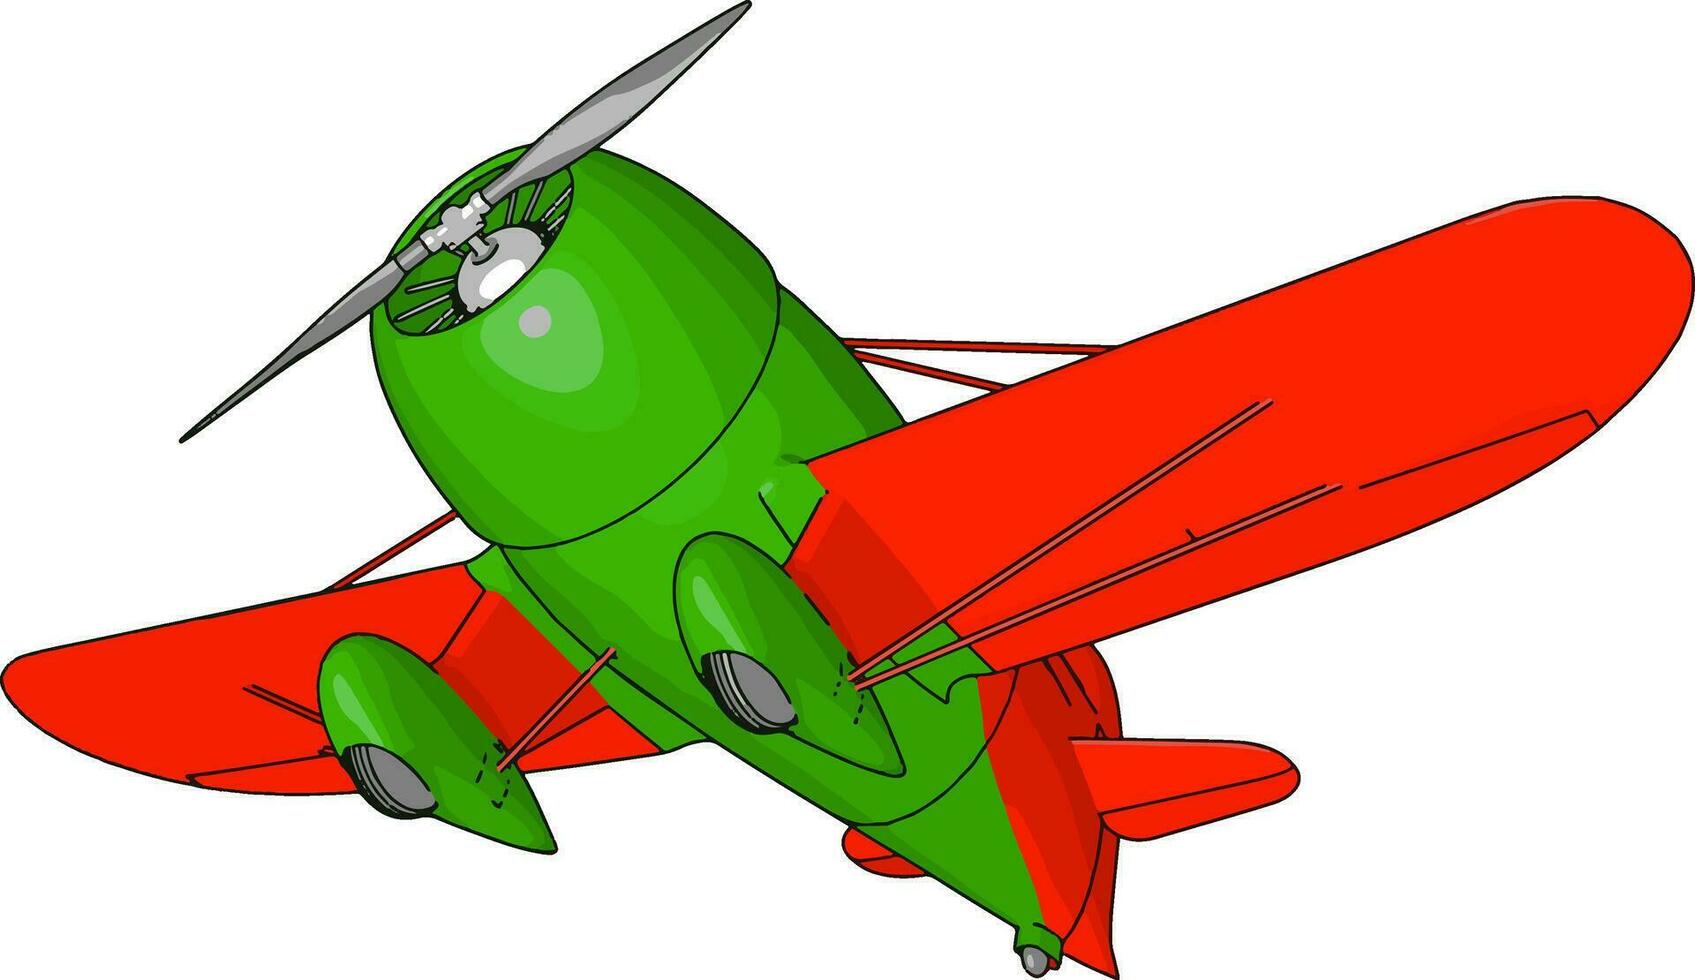 Viejo avión retro verde y rojo, ilustración, vector sobre fondo blanco.